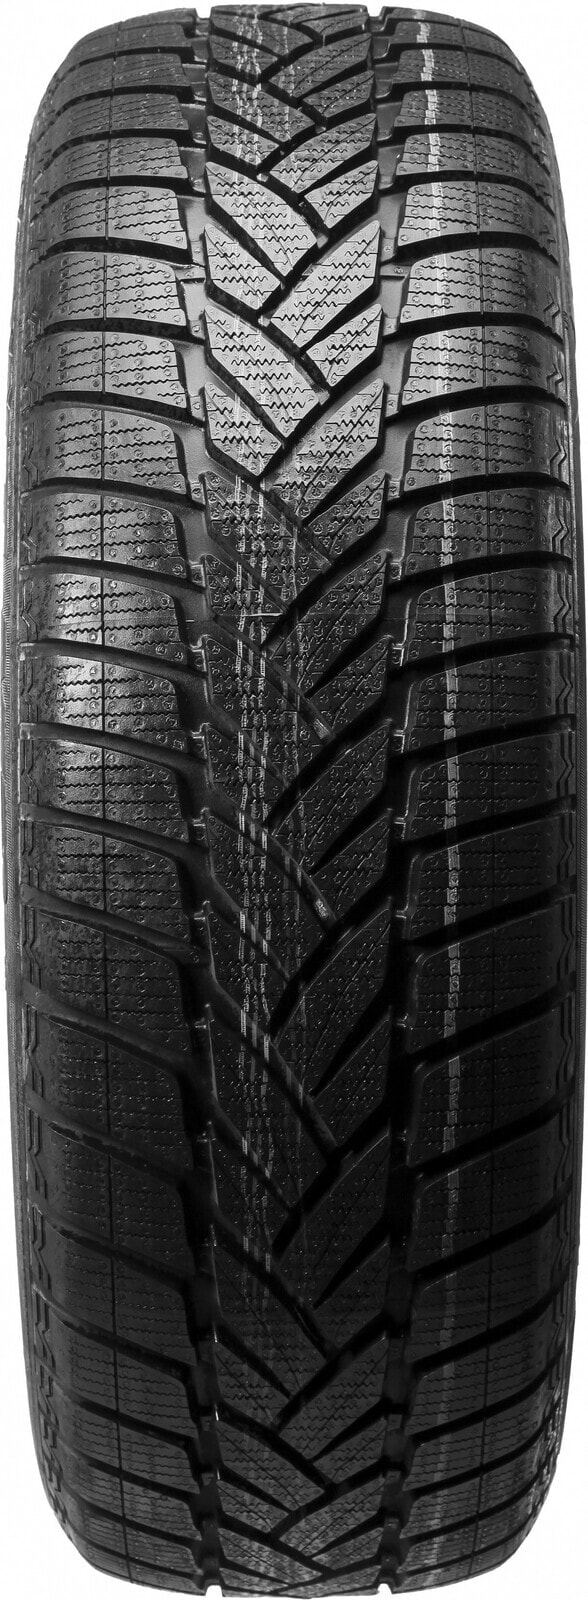 Шины для внедорожника зимние Dunlop Grandtrek WT M3 M+S 3PMSF DOT22 275/55 R19 111H